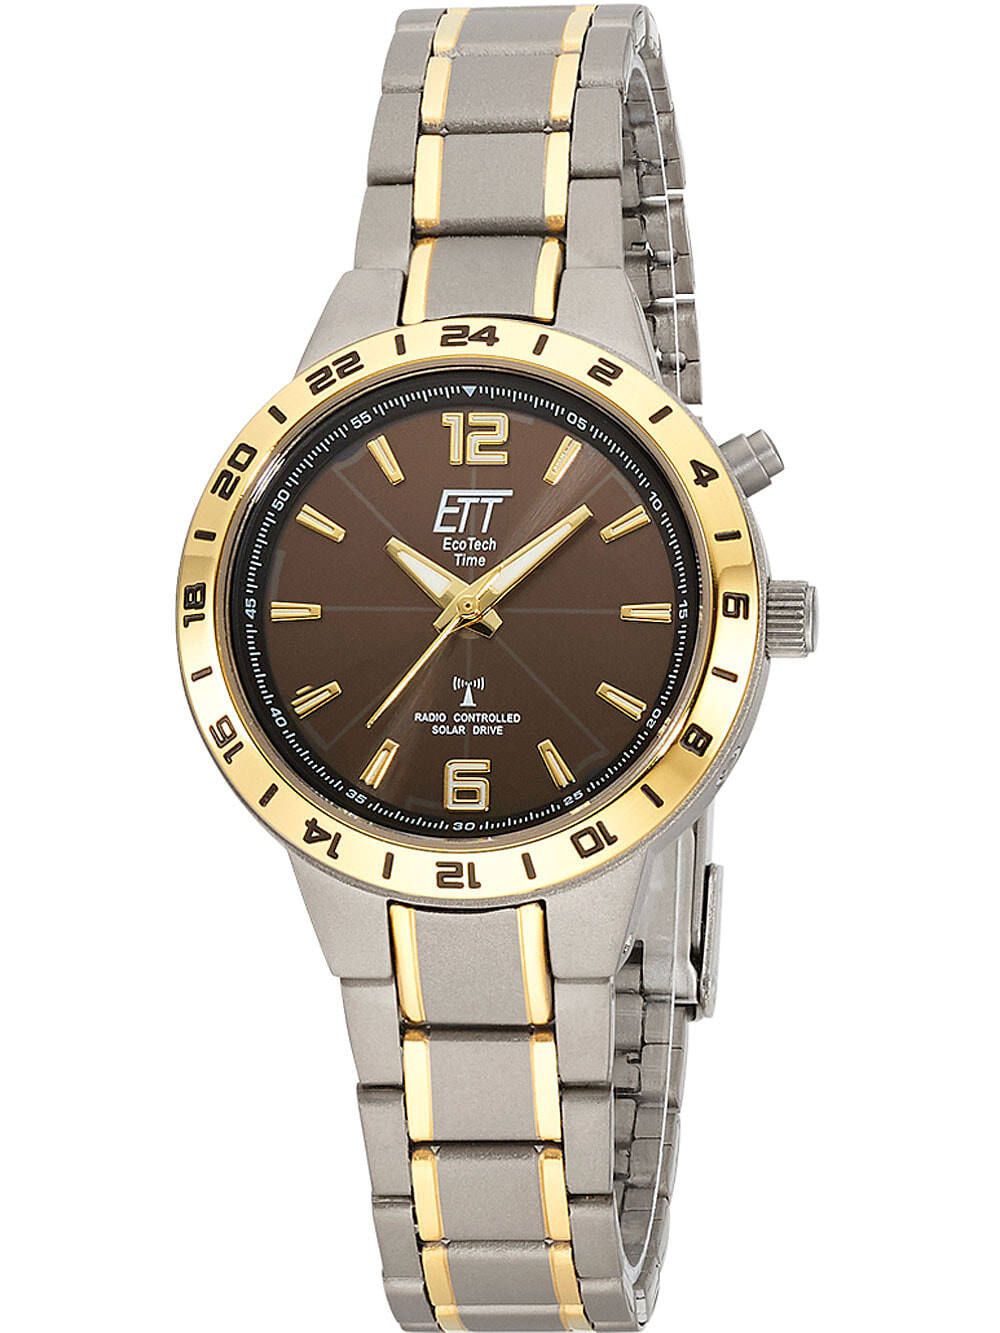 Женские наручные кварцевые часы ETT Eco Tech Time  титановый ремешок. Водонепроницаемость-5 АТМ. Защищенное от царапин минеральное стекло.